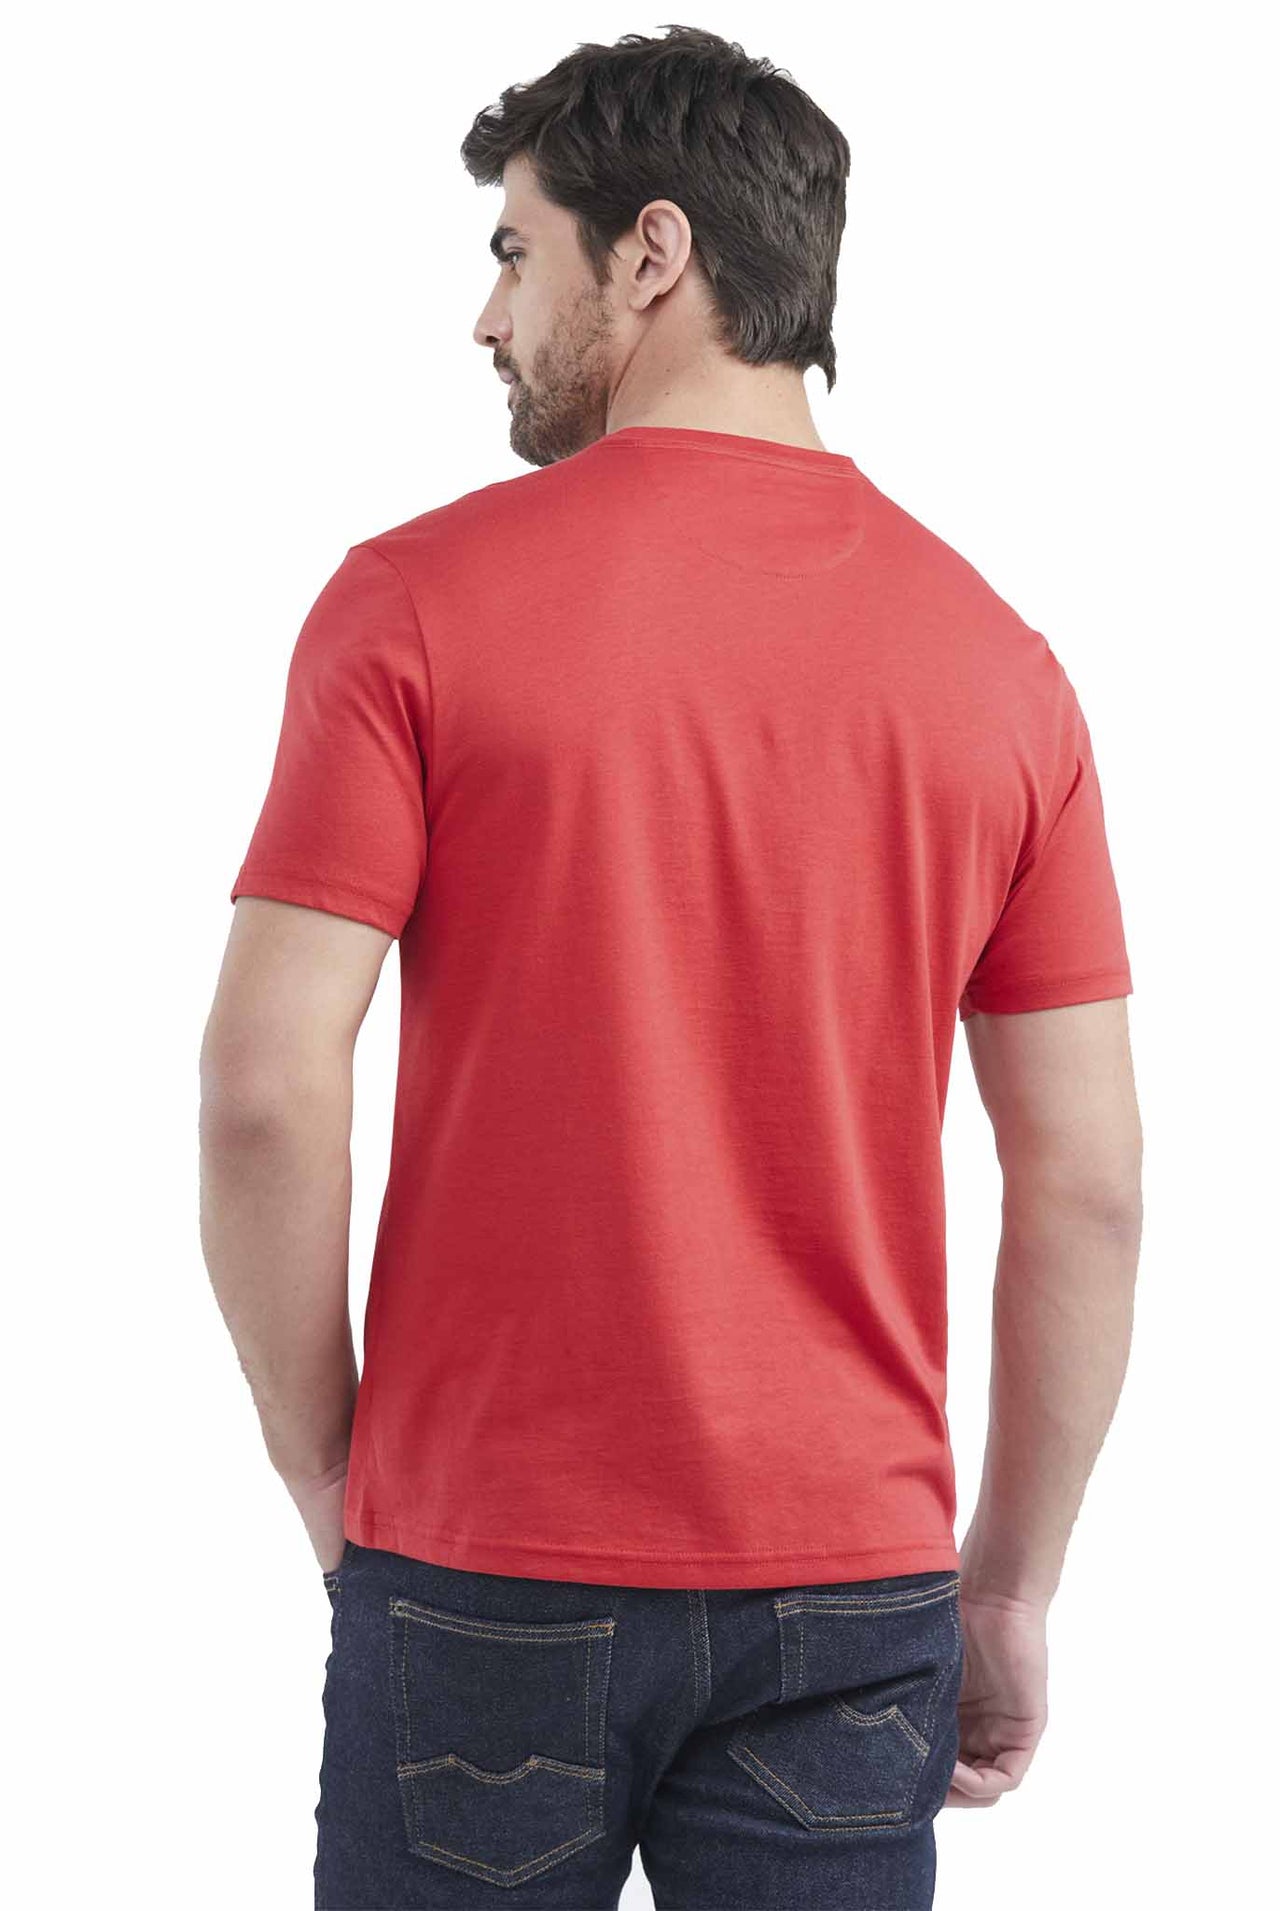 Camiseta Chevignon Manga Corta Cuello Redondo Color Rojo - 649E020-301